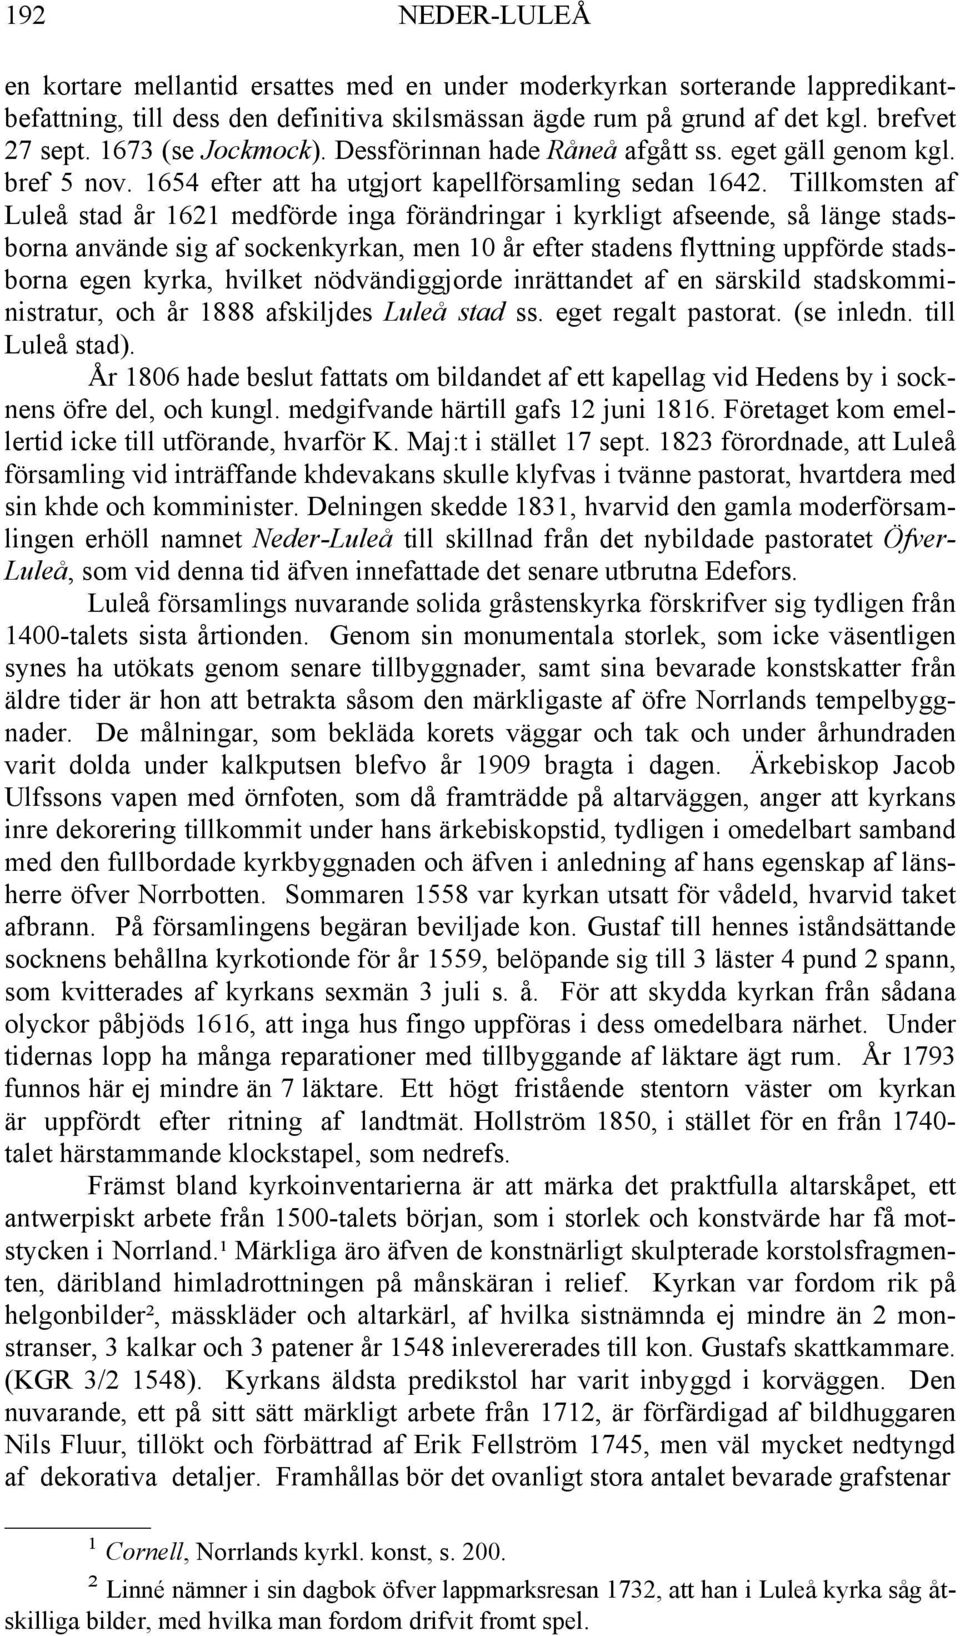 Tillkomsten af Luleå stad år 1621 medförde inga förändringar i kyrkligt afseende, så länge stadsborna använde sig af sockenkyrkan, men 10 år efter stadens flyttning uppförde stadsborna egen kyrka,